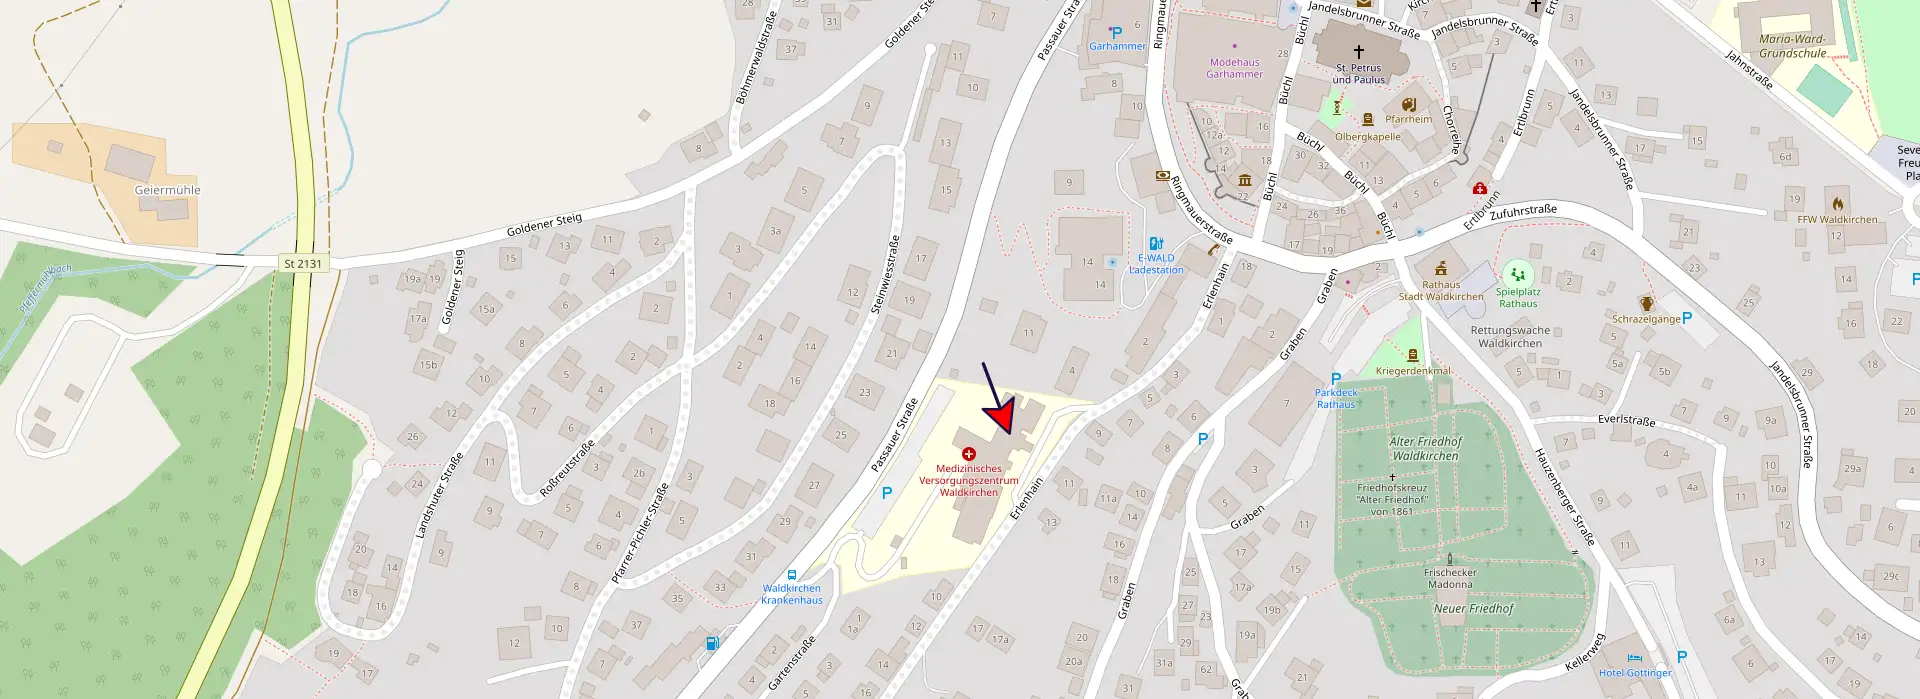 Konakt - Bild einer OpenStreetMap